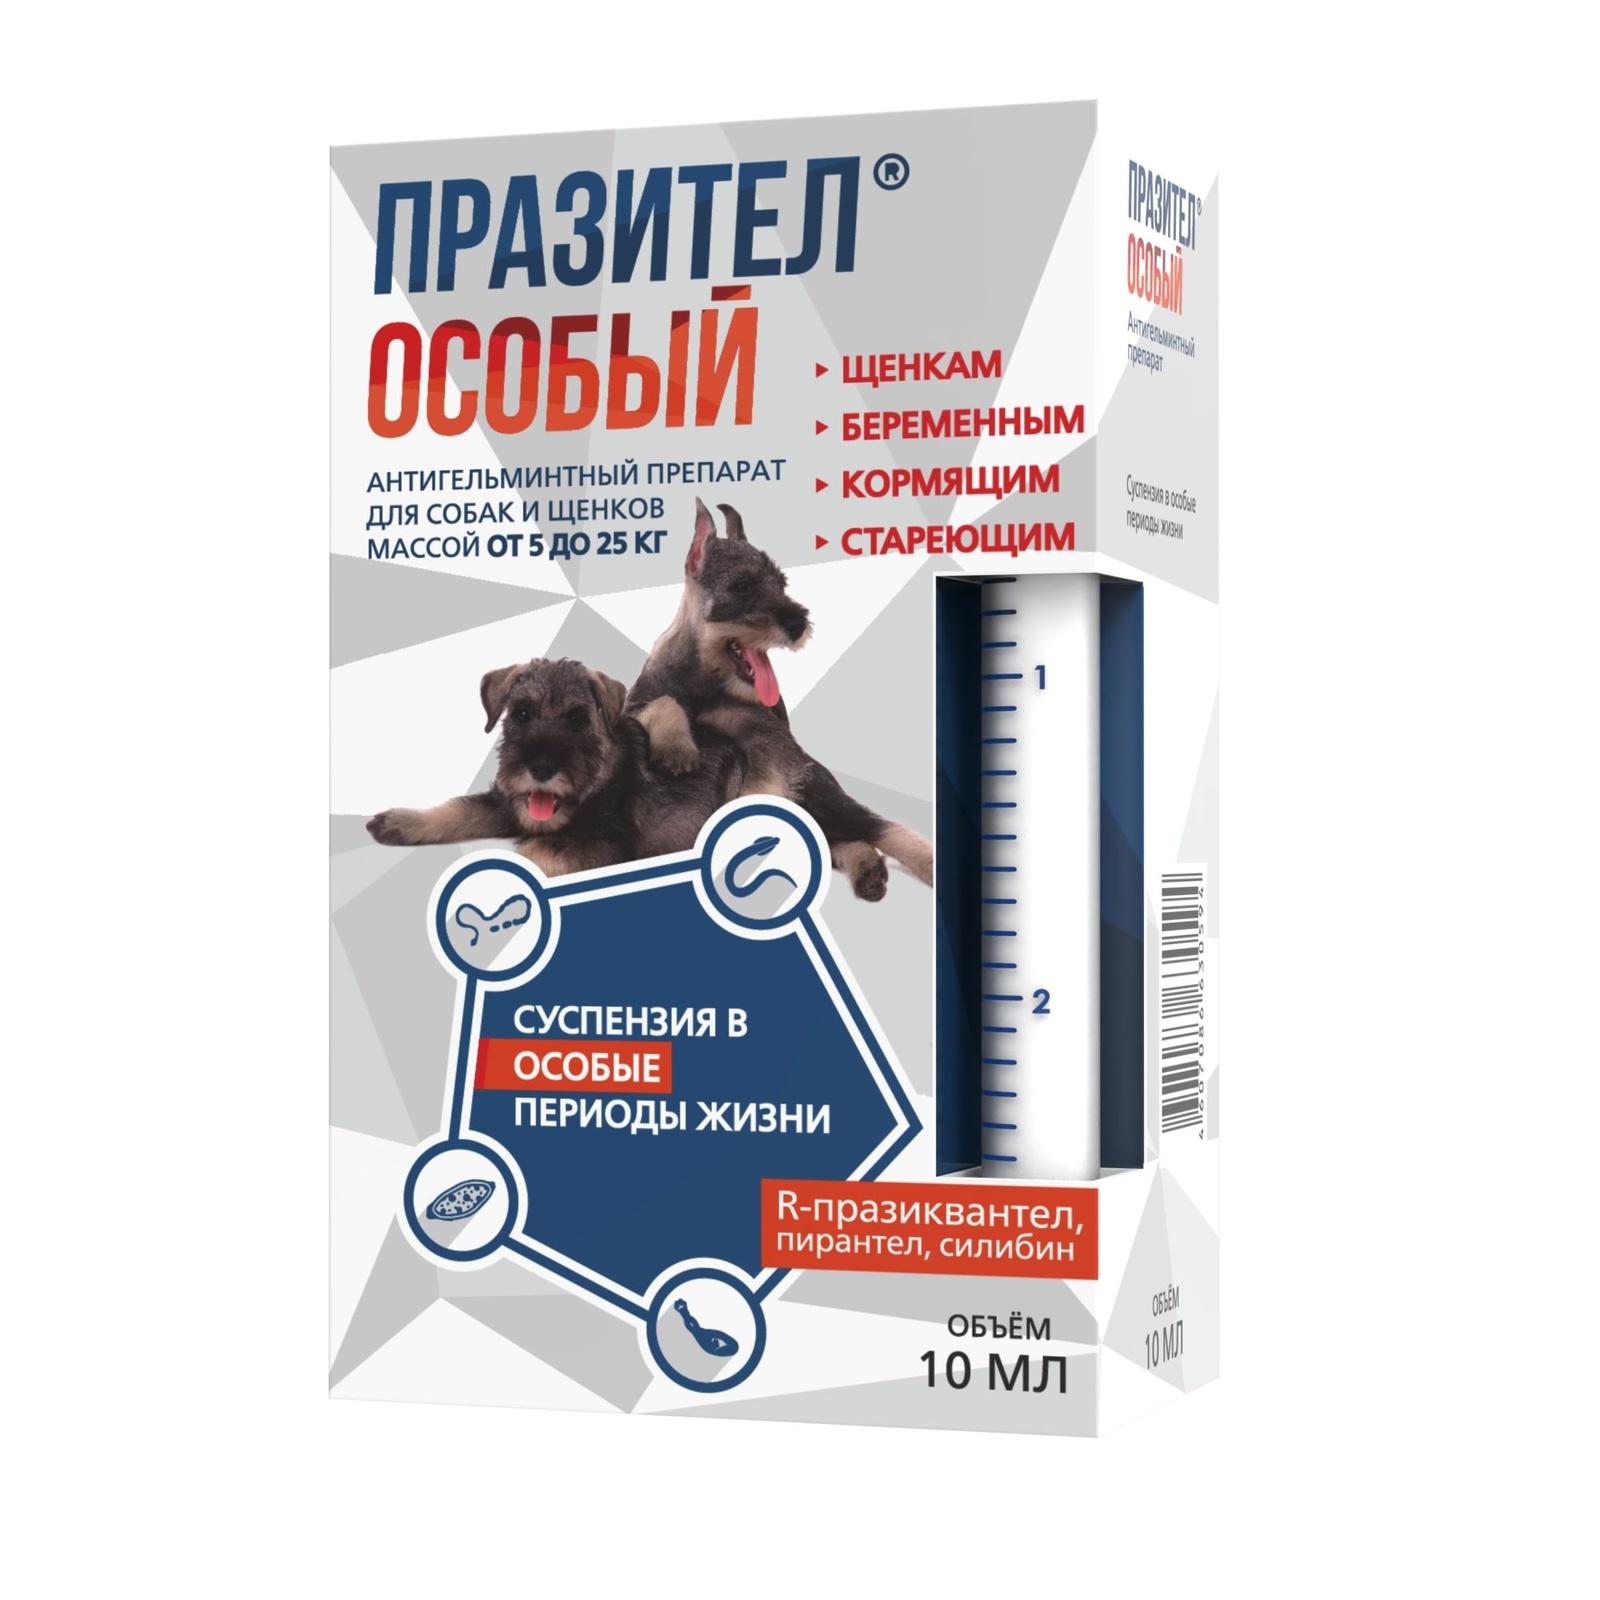 Астрафарм Астрафарм празител Особый антигельминтный препарат для собак и щенков массой от 5 до 25 кг (73 г)